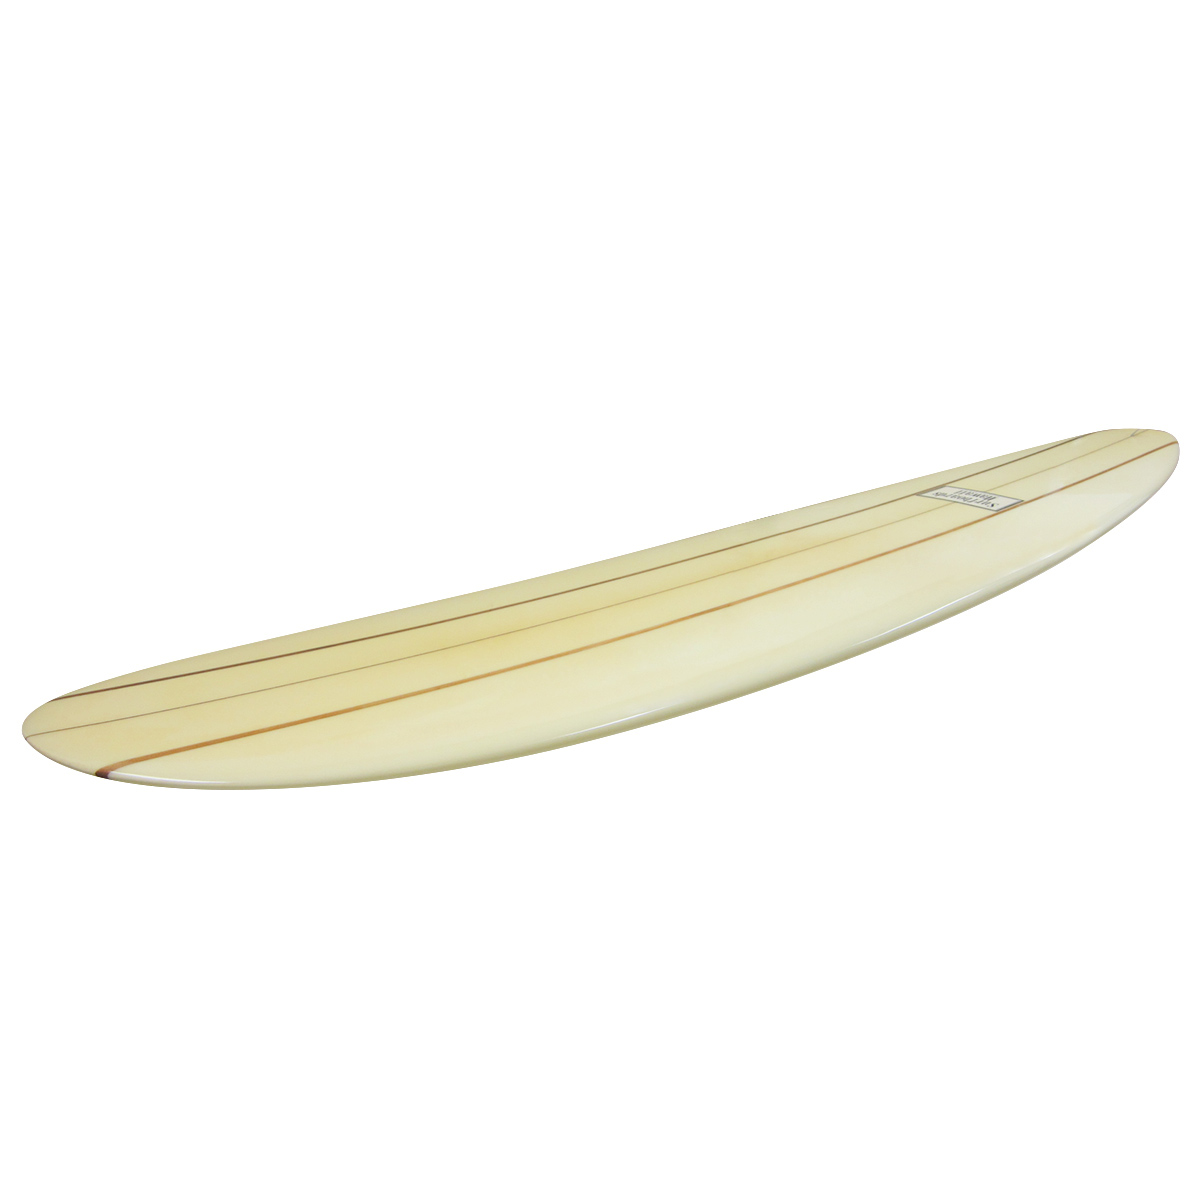 SURFBOARDS HAWAII / 9`8 Custom Shaped By HANK BYZAK 